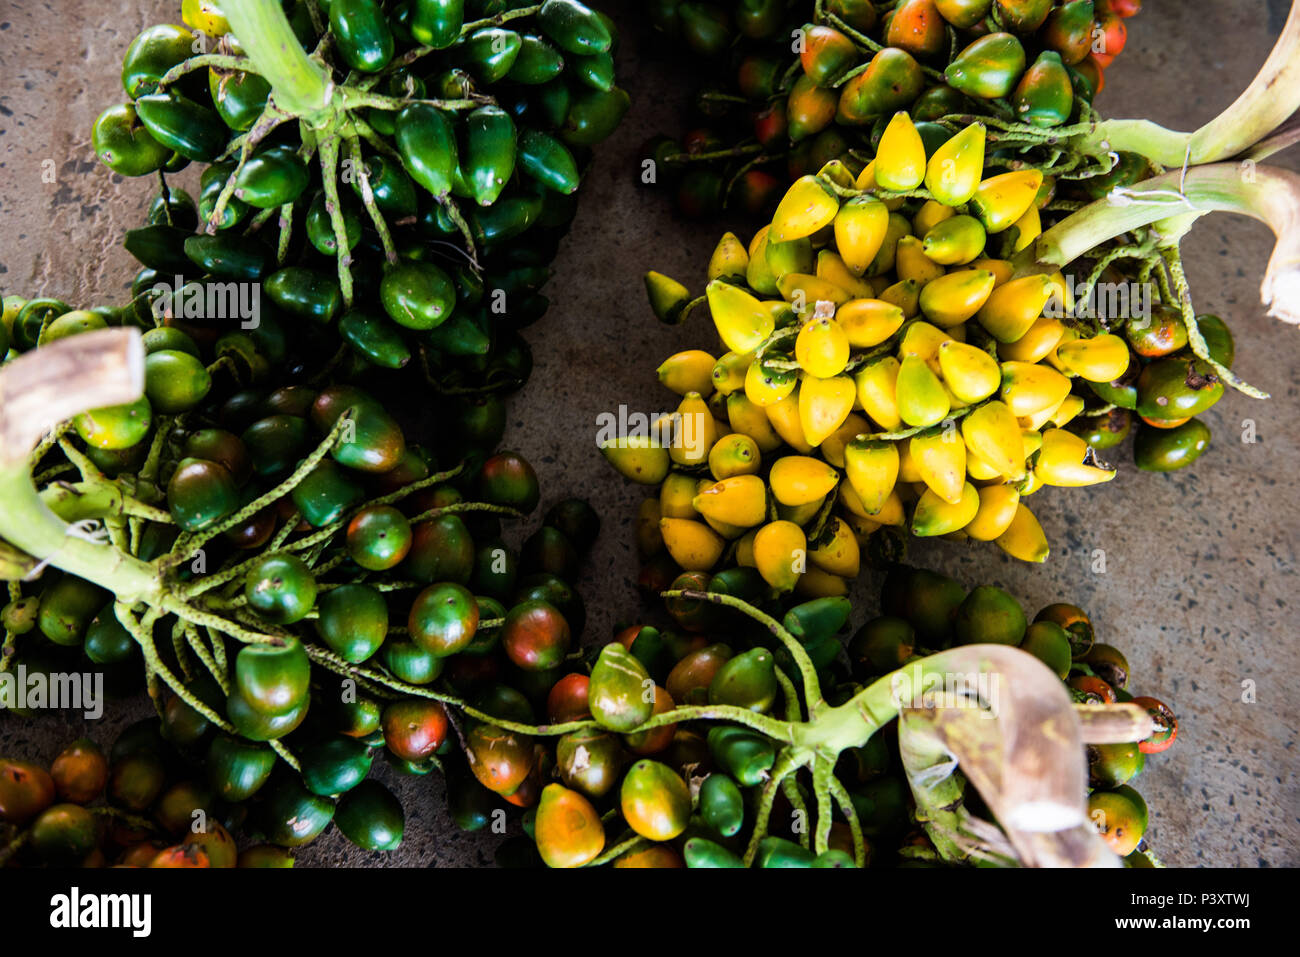 Présente, et présente-vert-amarela, Bactris gasipaes, fruta da régionale regi'o amazônica, durante feira de produtos em Iranduba tam/AM. Banque D'Images